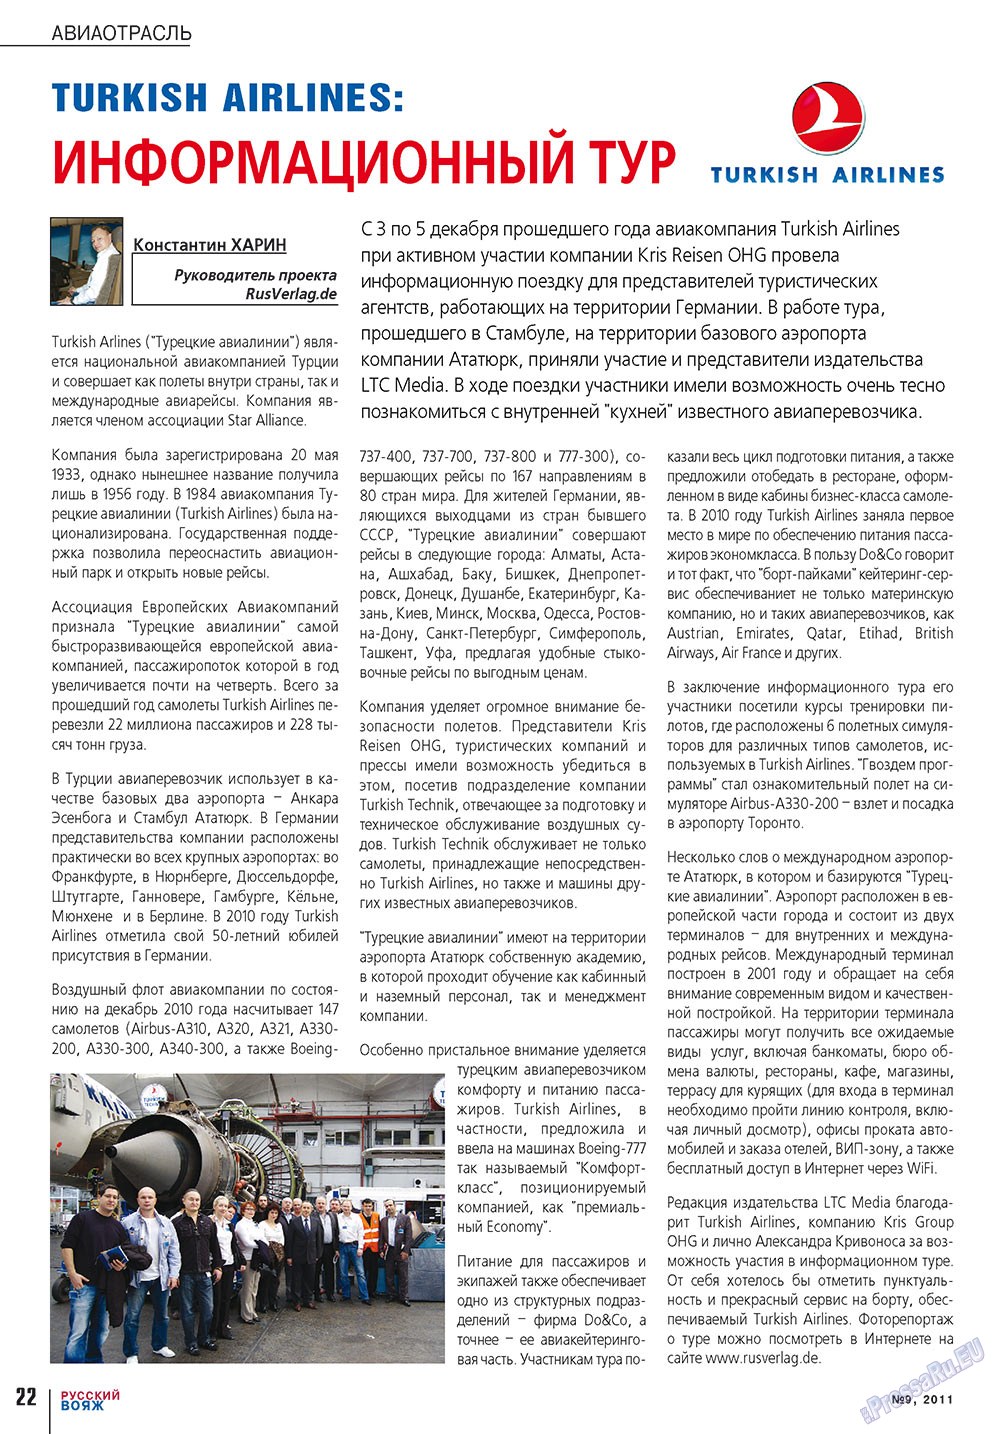 Русский вояж, журнал. 2011 №9 стр.22